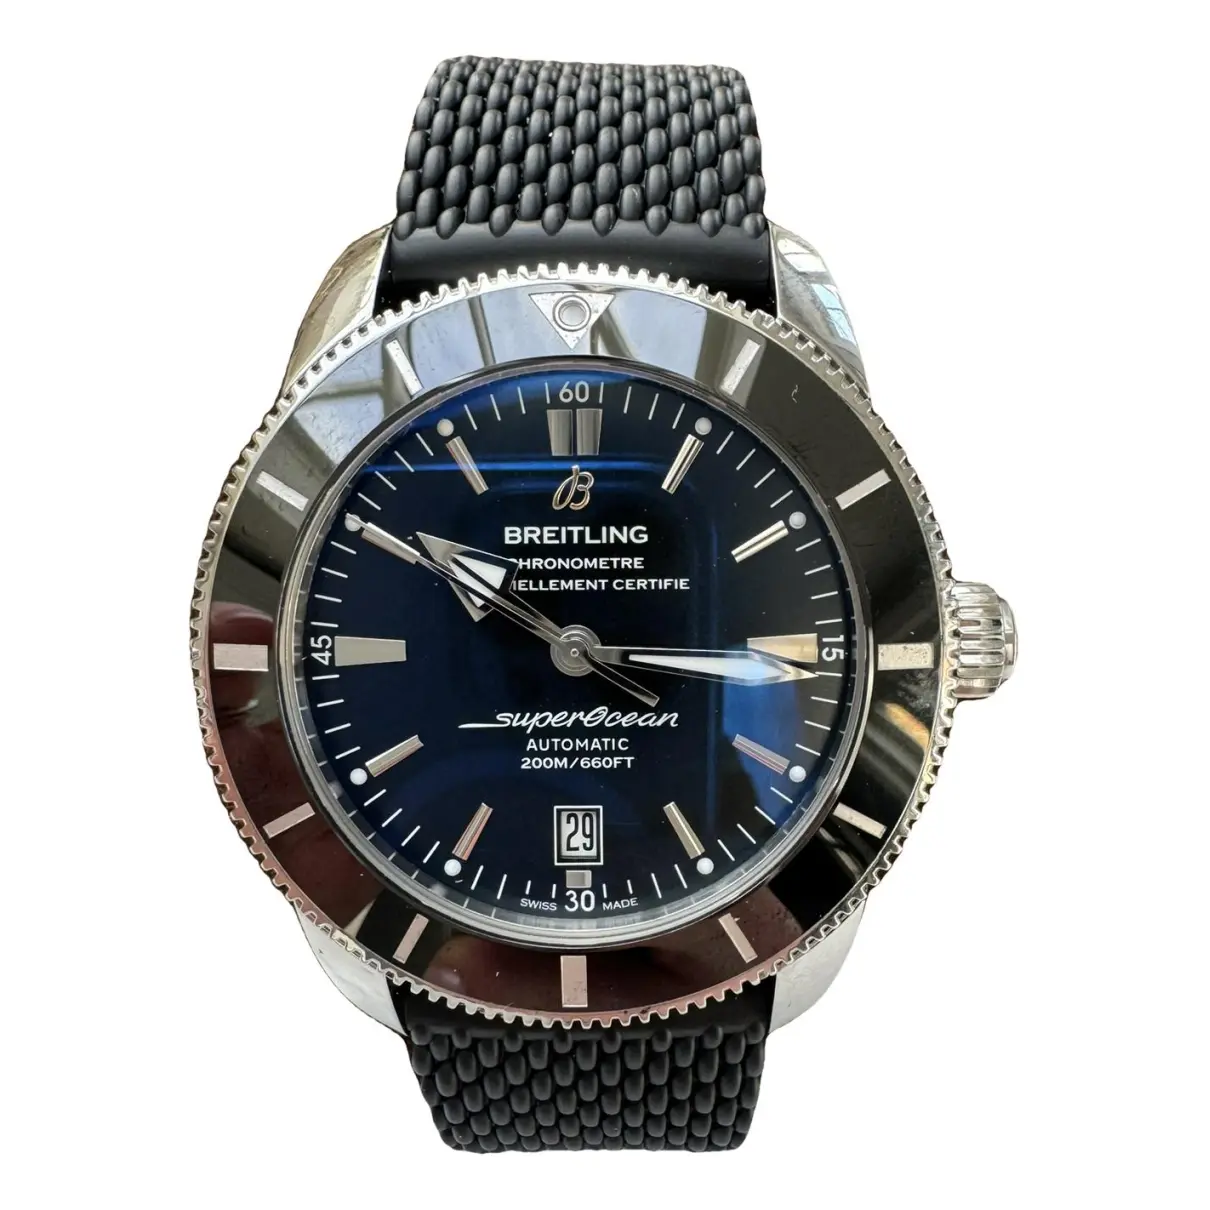 SuperOcean watch